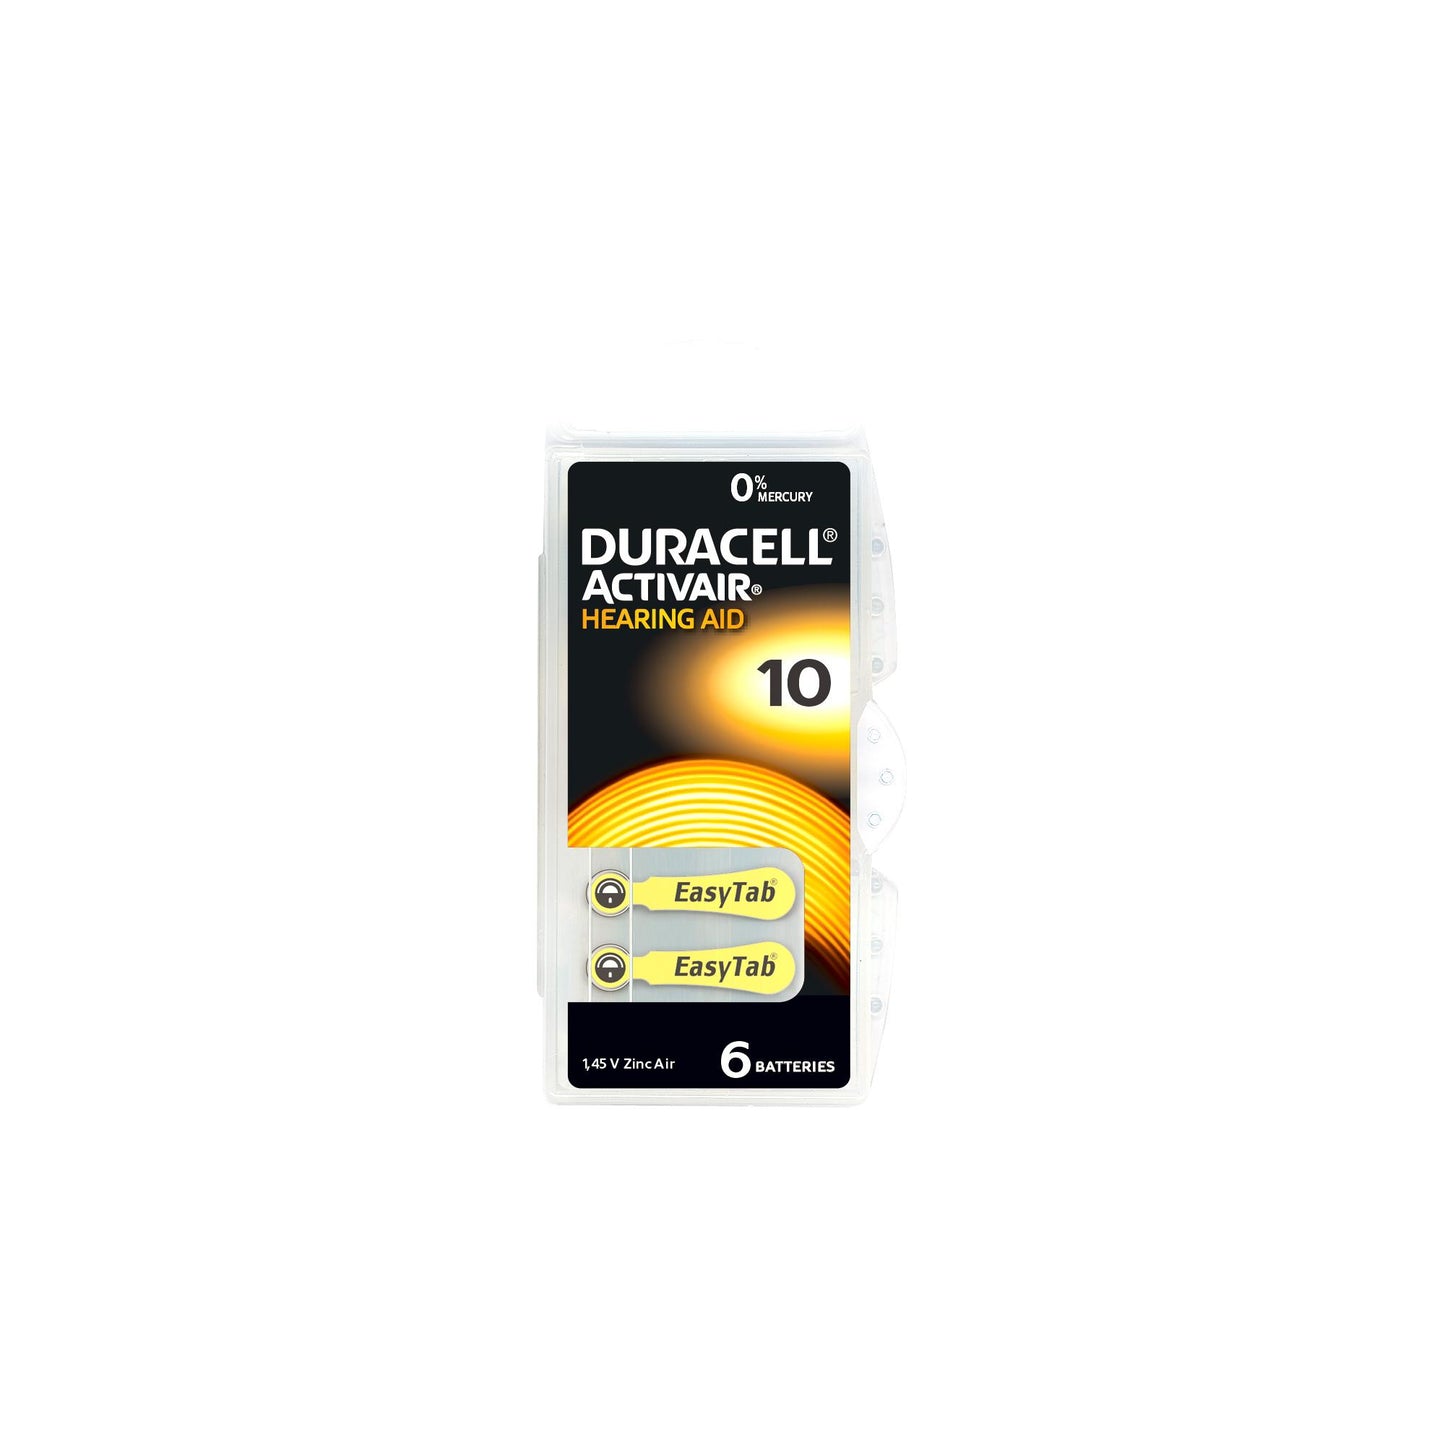 DURACELL Batterie Zinc Air 10, 1.45V Activair, Retail Blister (6-Pack)